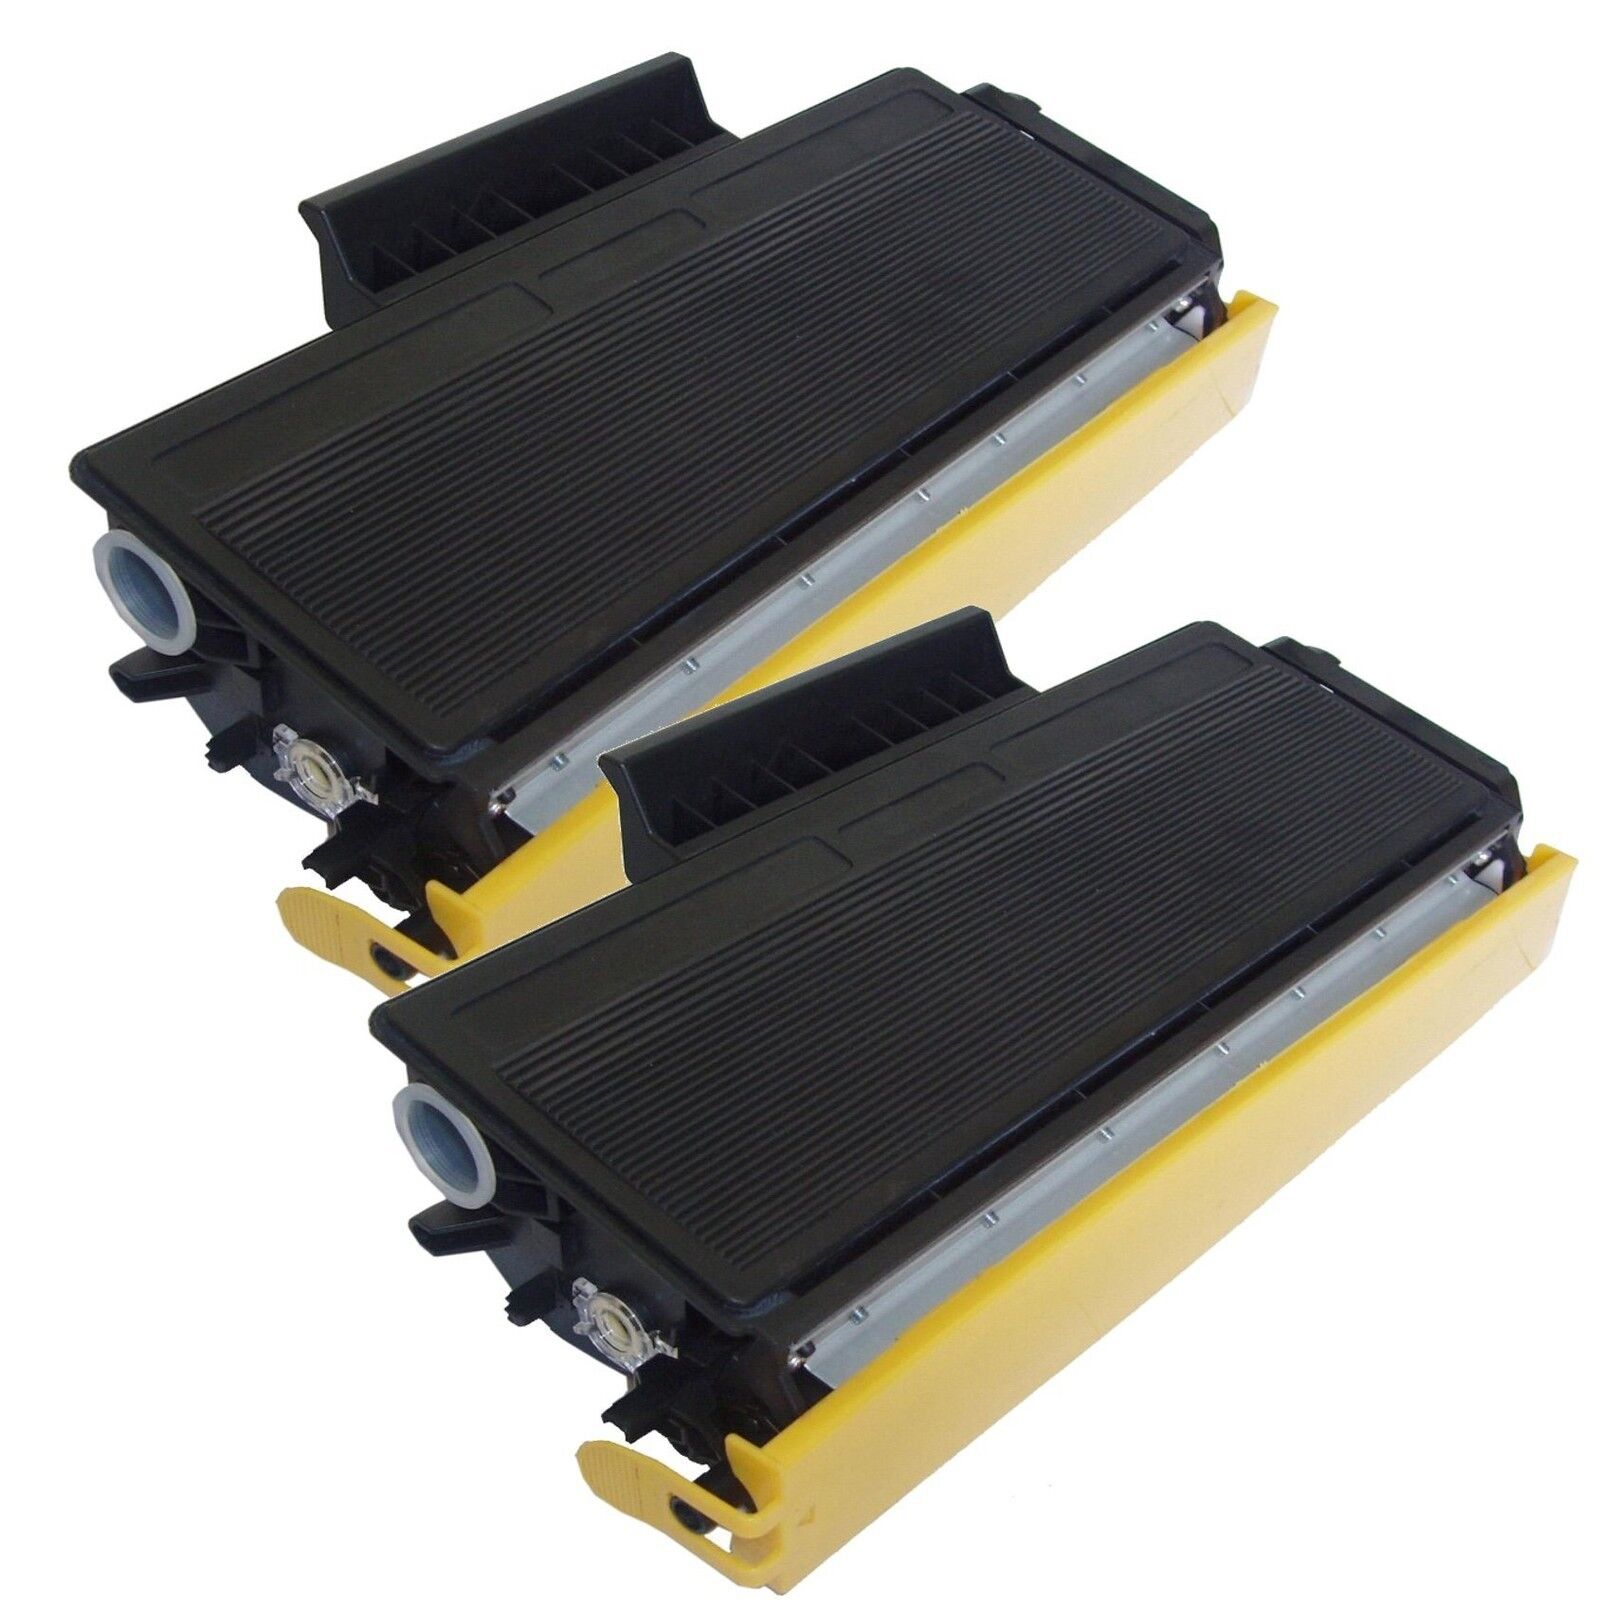 2 Pk TN-580 Toner Cartridge for Brother TN580 HL-5240 HL-5250 HL-5270DN HL-5280